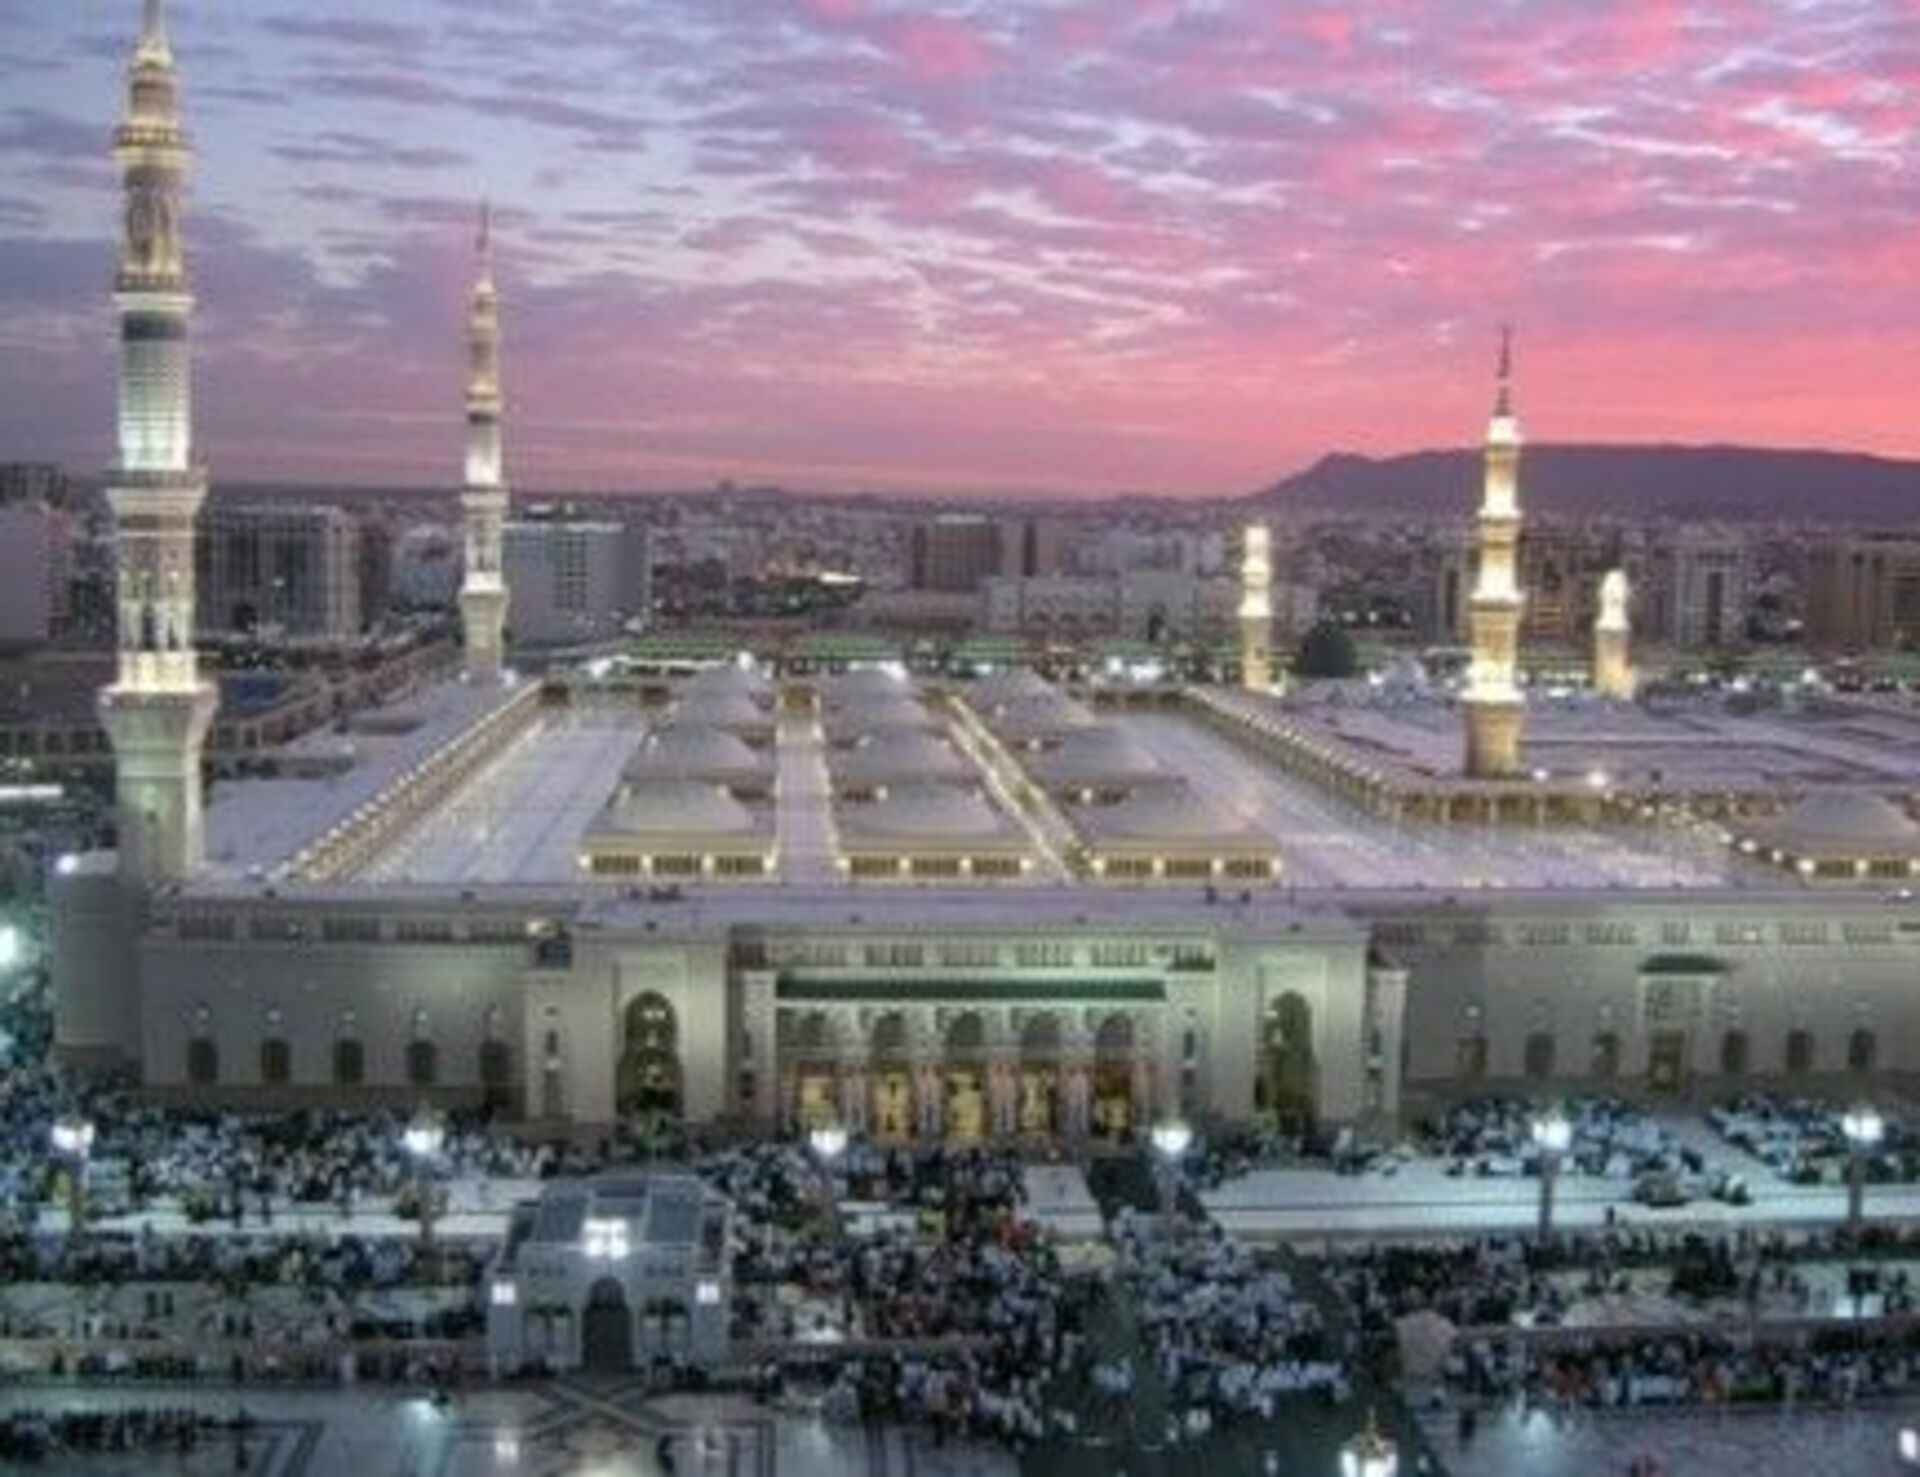 Город мекка и медина. Саудовская Аравия Мадина макка. Мечеть пророка в Мекке. Мечеть Аль-харам Саудовская Аравия. Аль-Набави (мечеть пророка) в Медине.